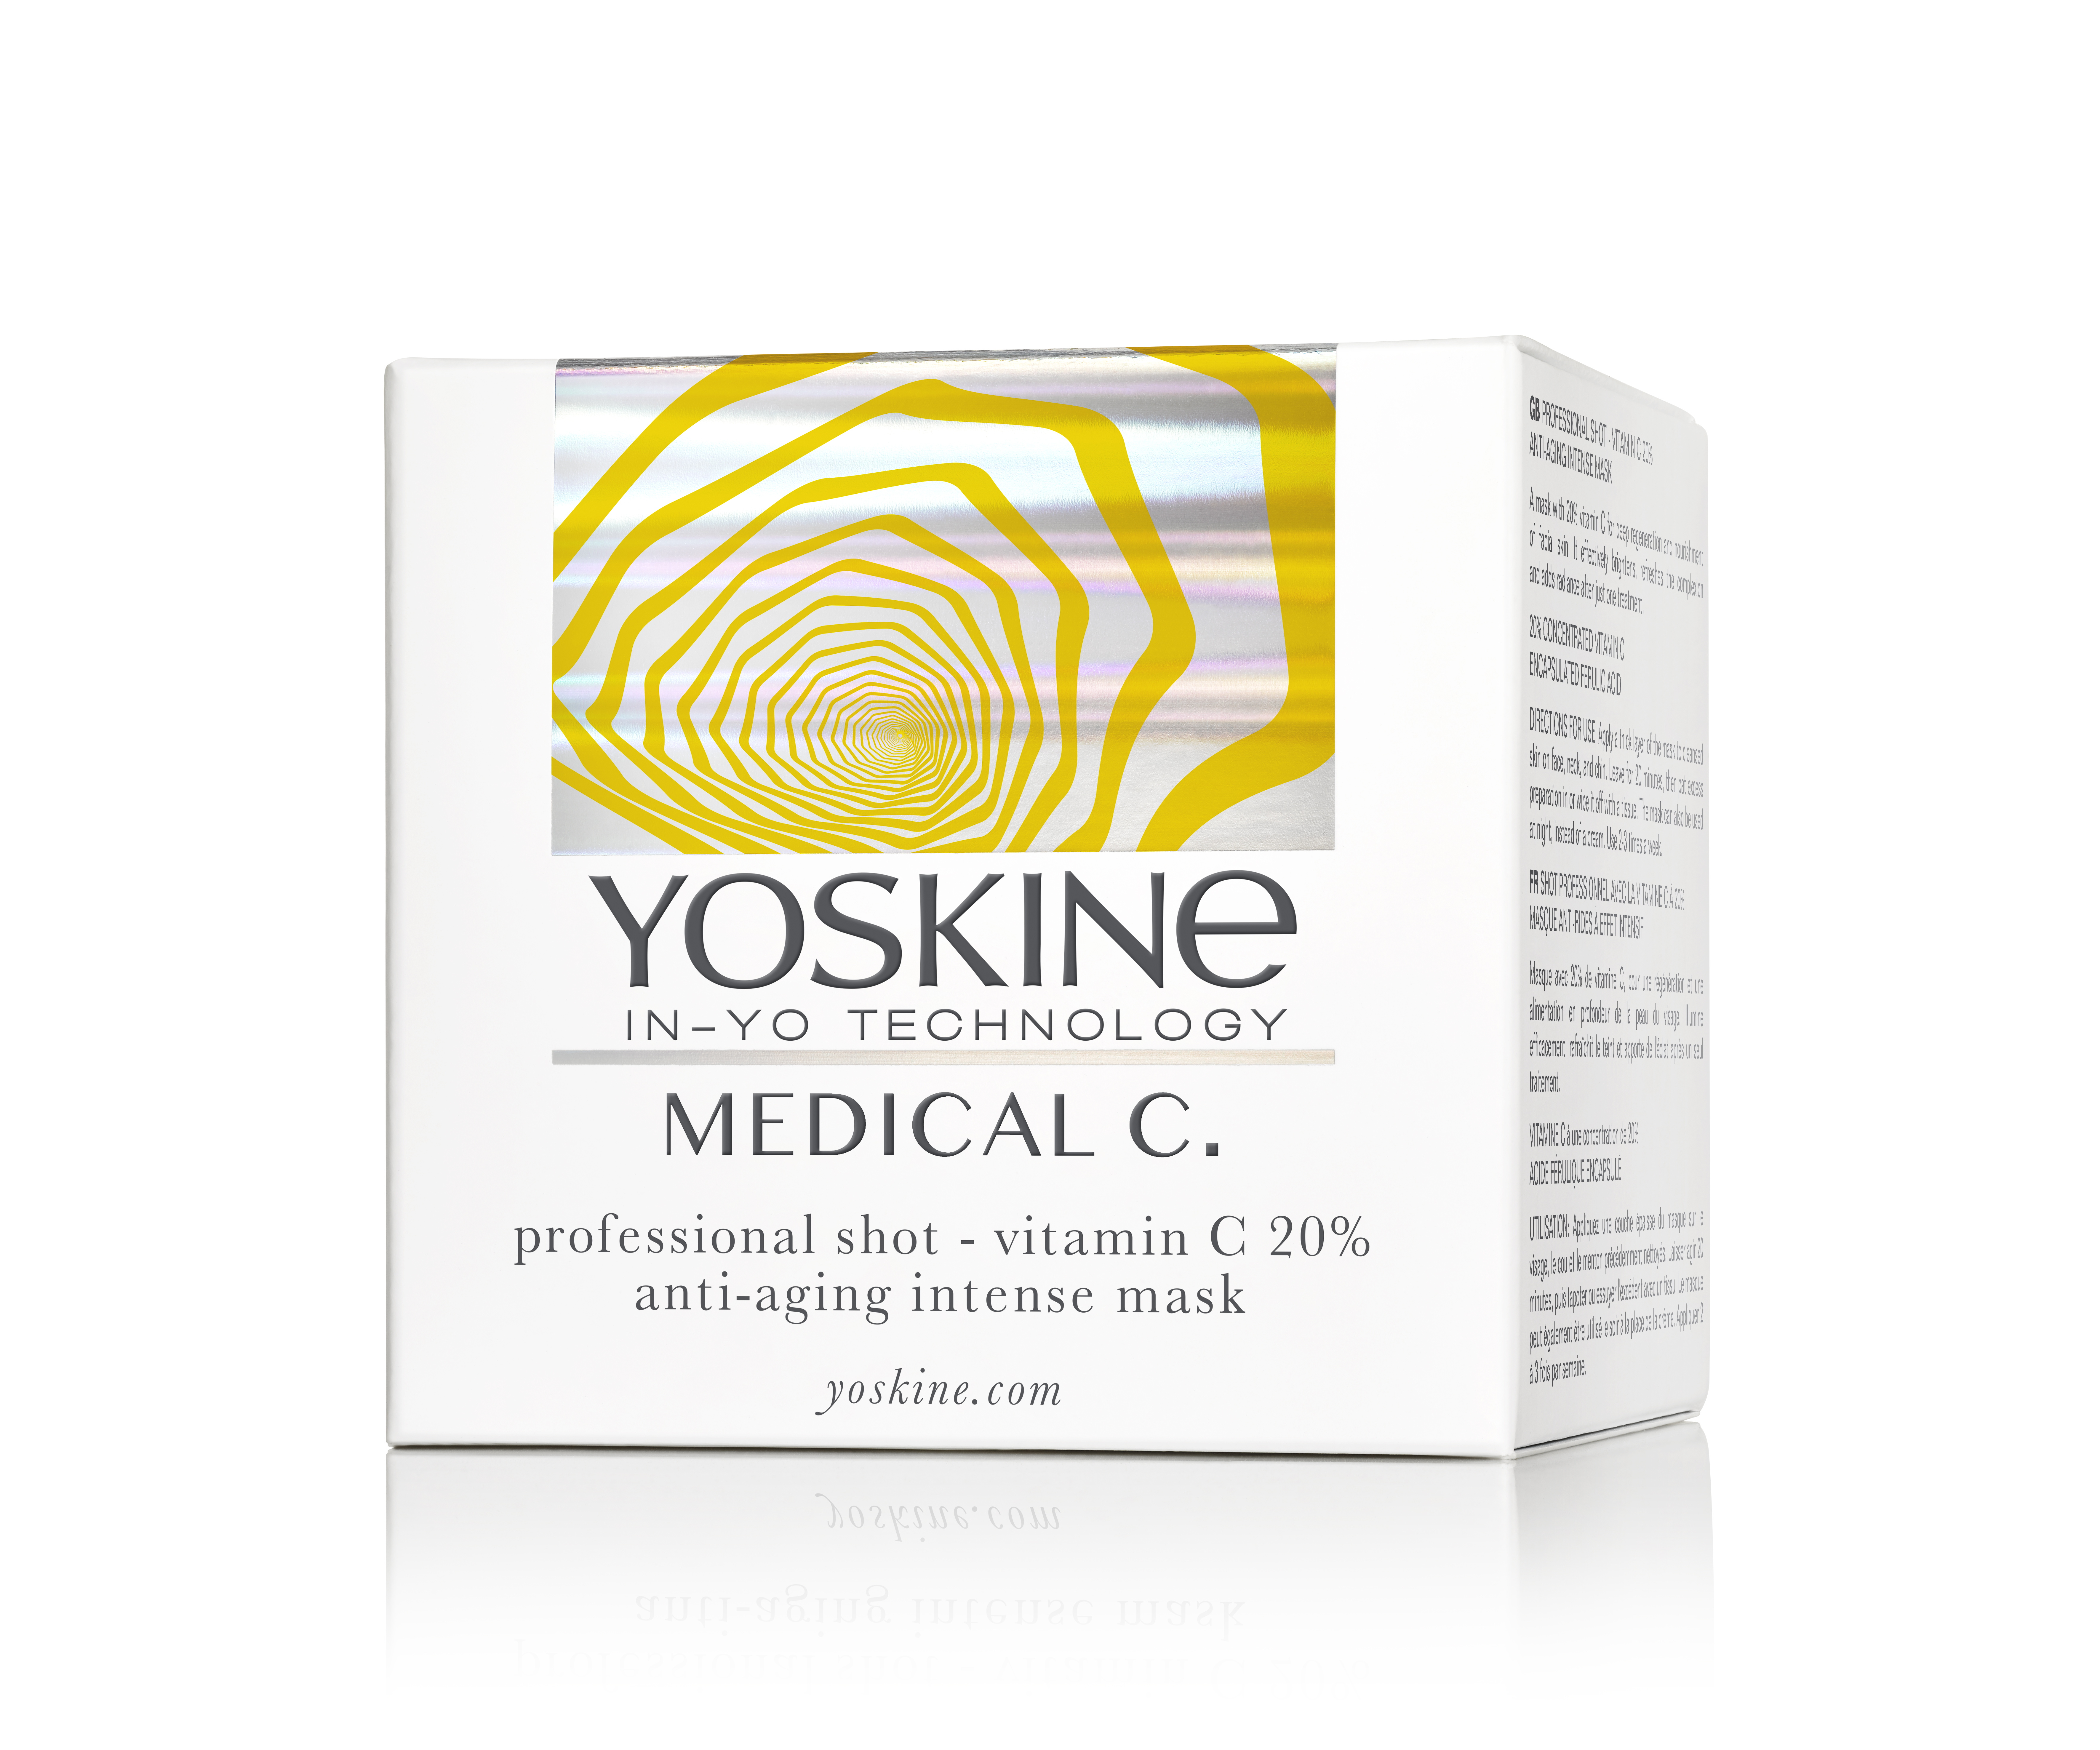 YOSKINE MEDICAL C. Professional shot - Vitamin C 20% anti-aging intense mask